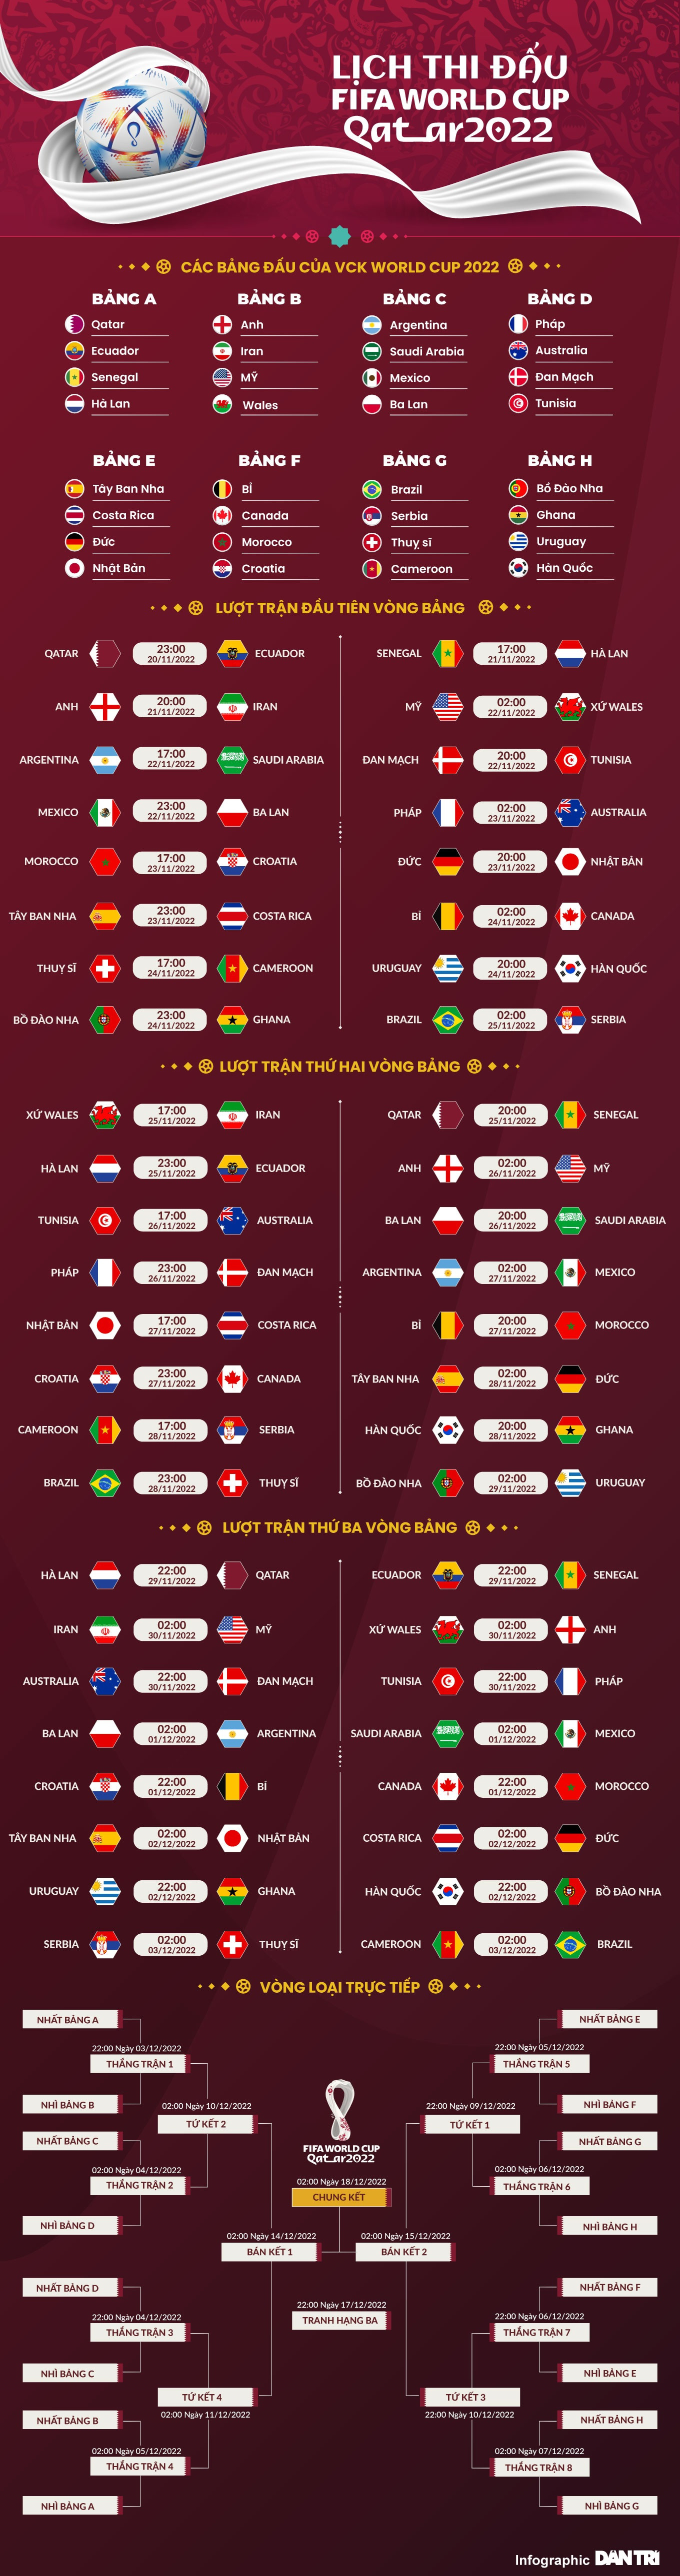 Lịch sử World Cup 2010: Tây Ban Nha trên đỉnh thế giới - 3